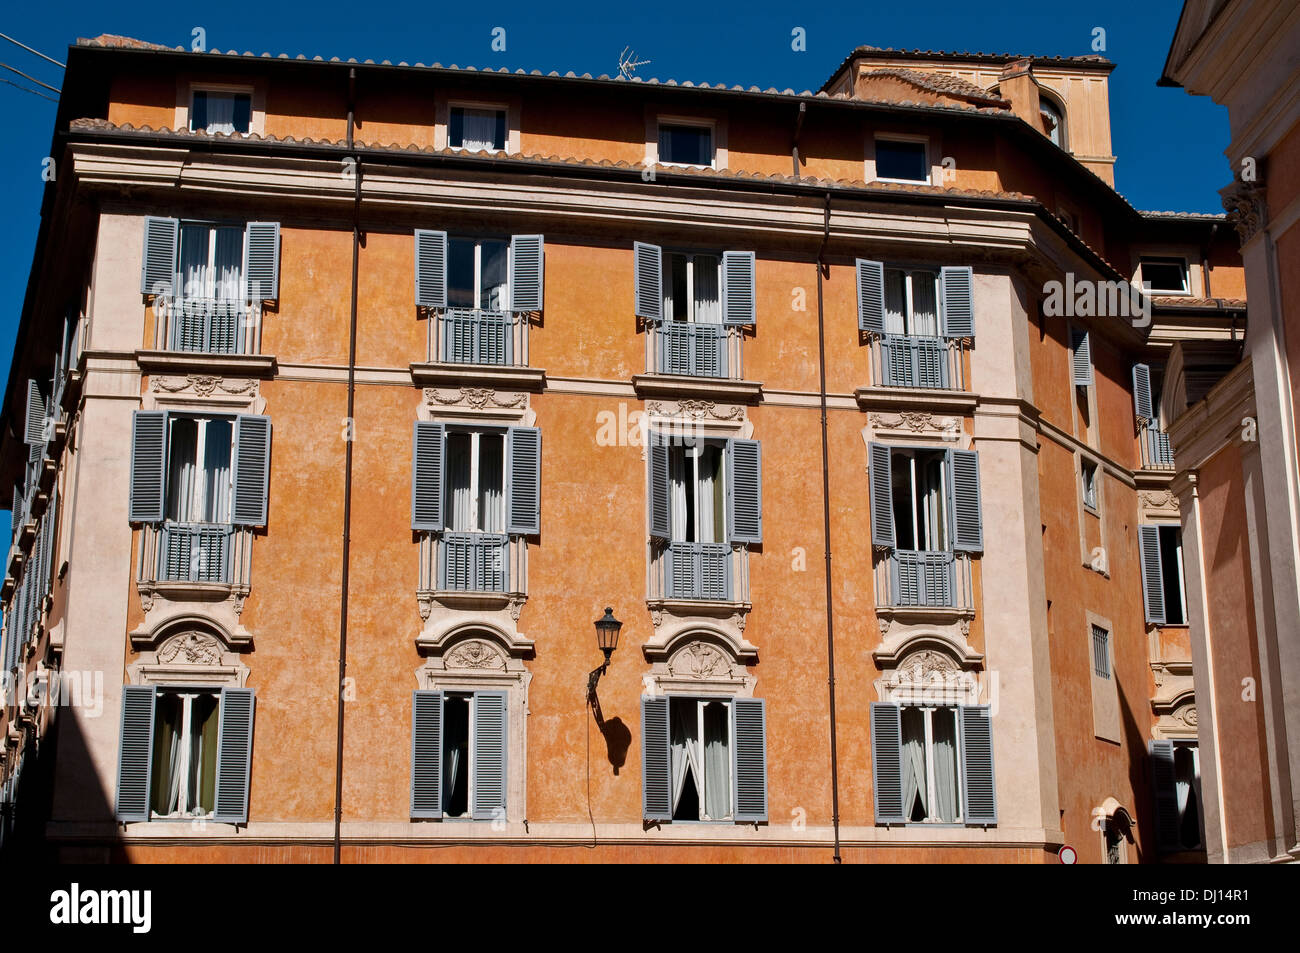 Configuration des fenêtres, Testa Palazzo Piccolomini, palais du 18ème siècle dans le quartier de Trevi, Rome, Italie Banque D'Images